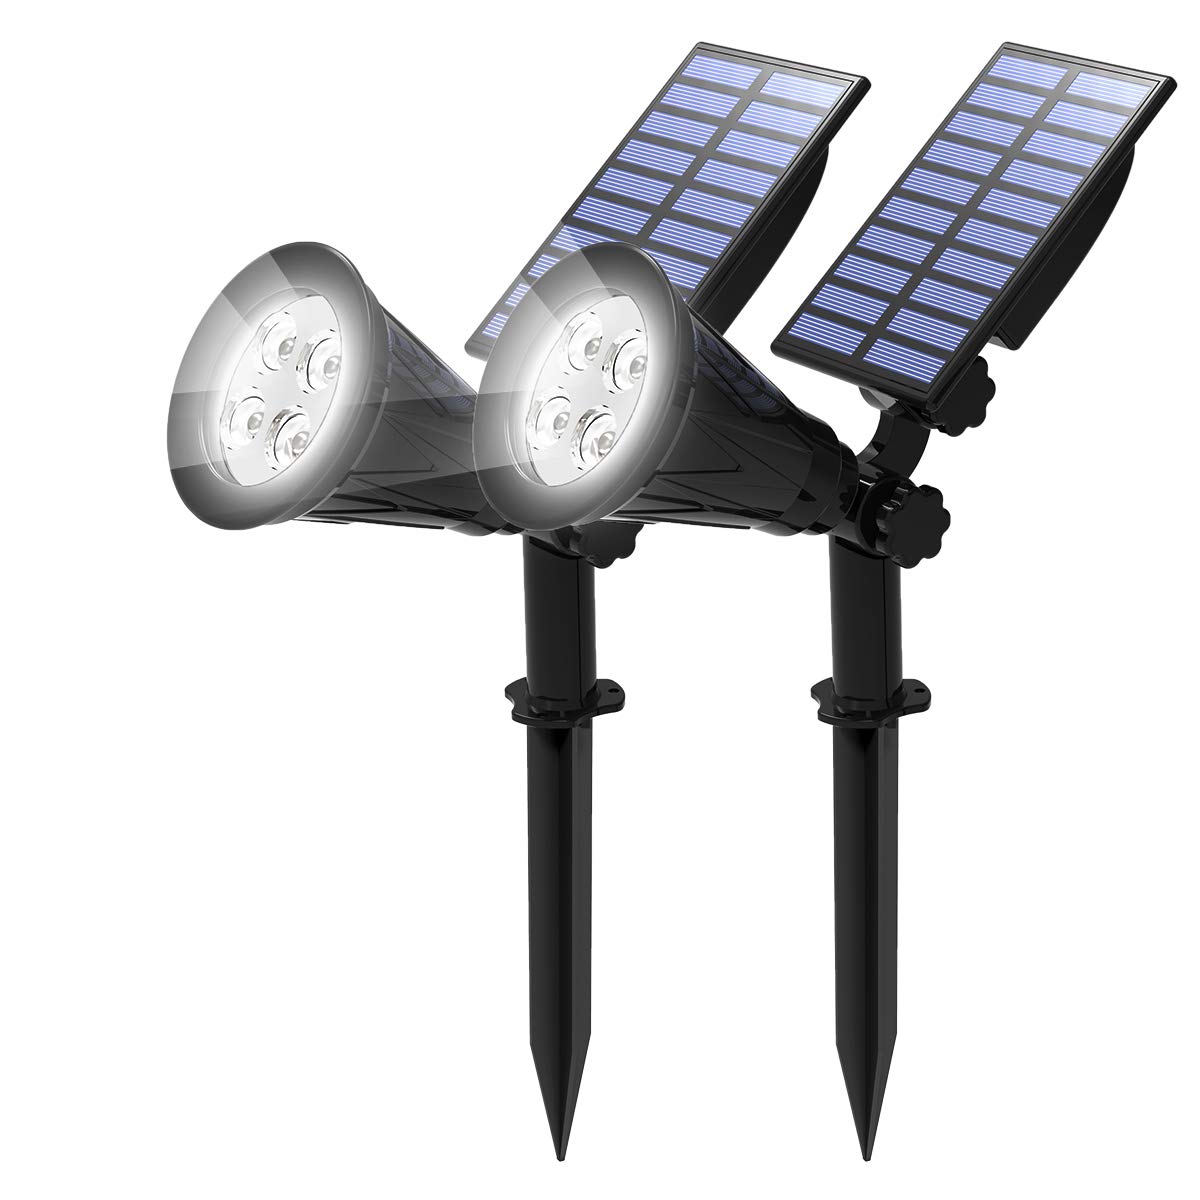 T-SUN LED Solarstrahler, 2 Stück 4 LED Gartenstrahler Solarleuchten, Helle Garten-Licht, 2 Beleuchtungsmodi, Sicherheitsbeleuchtung,Großes Außenlicht für Rasen, Wege,Terrasse(Kaltes Weiß 6000K)